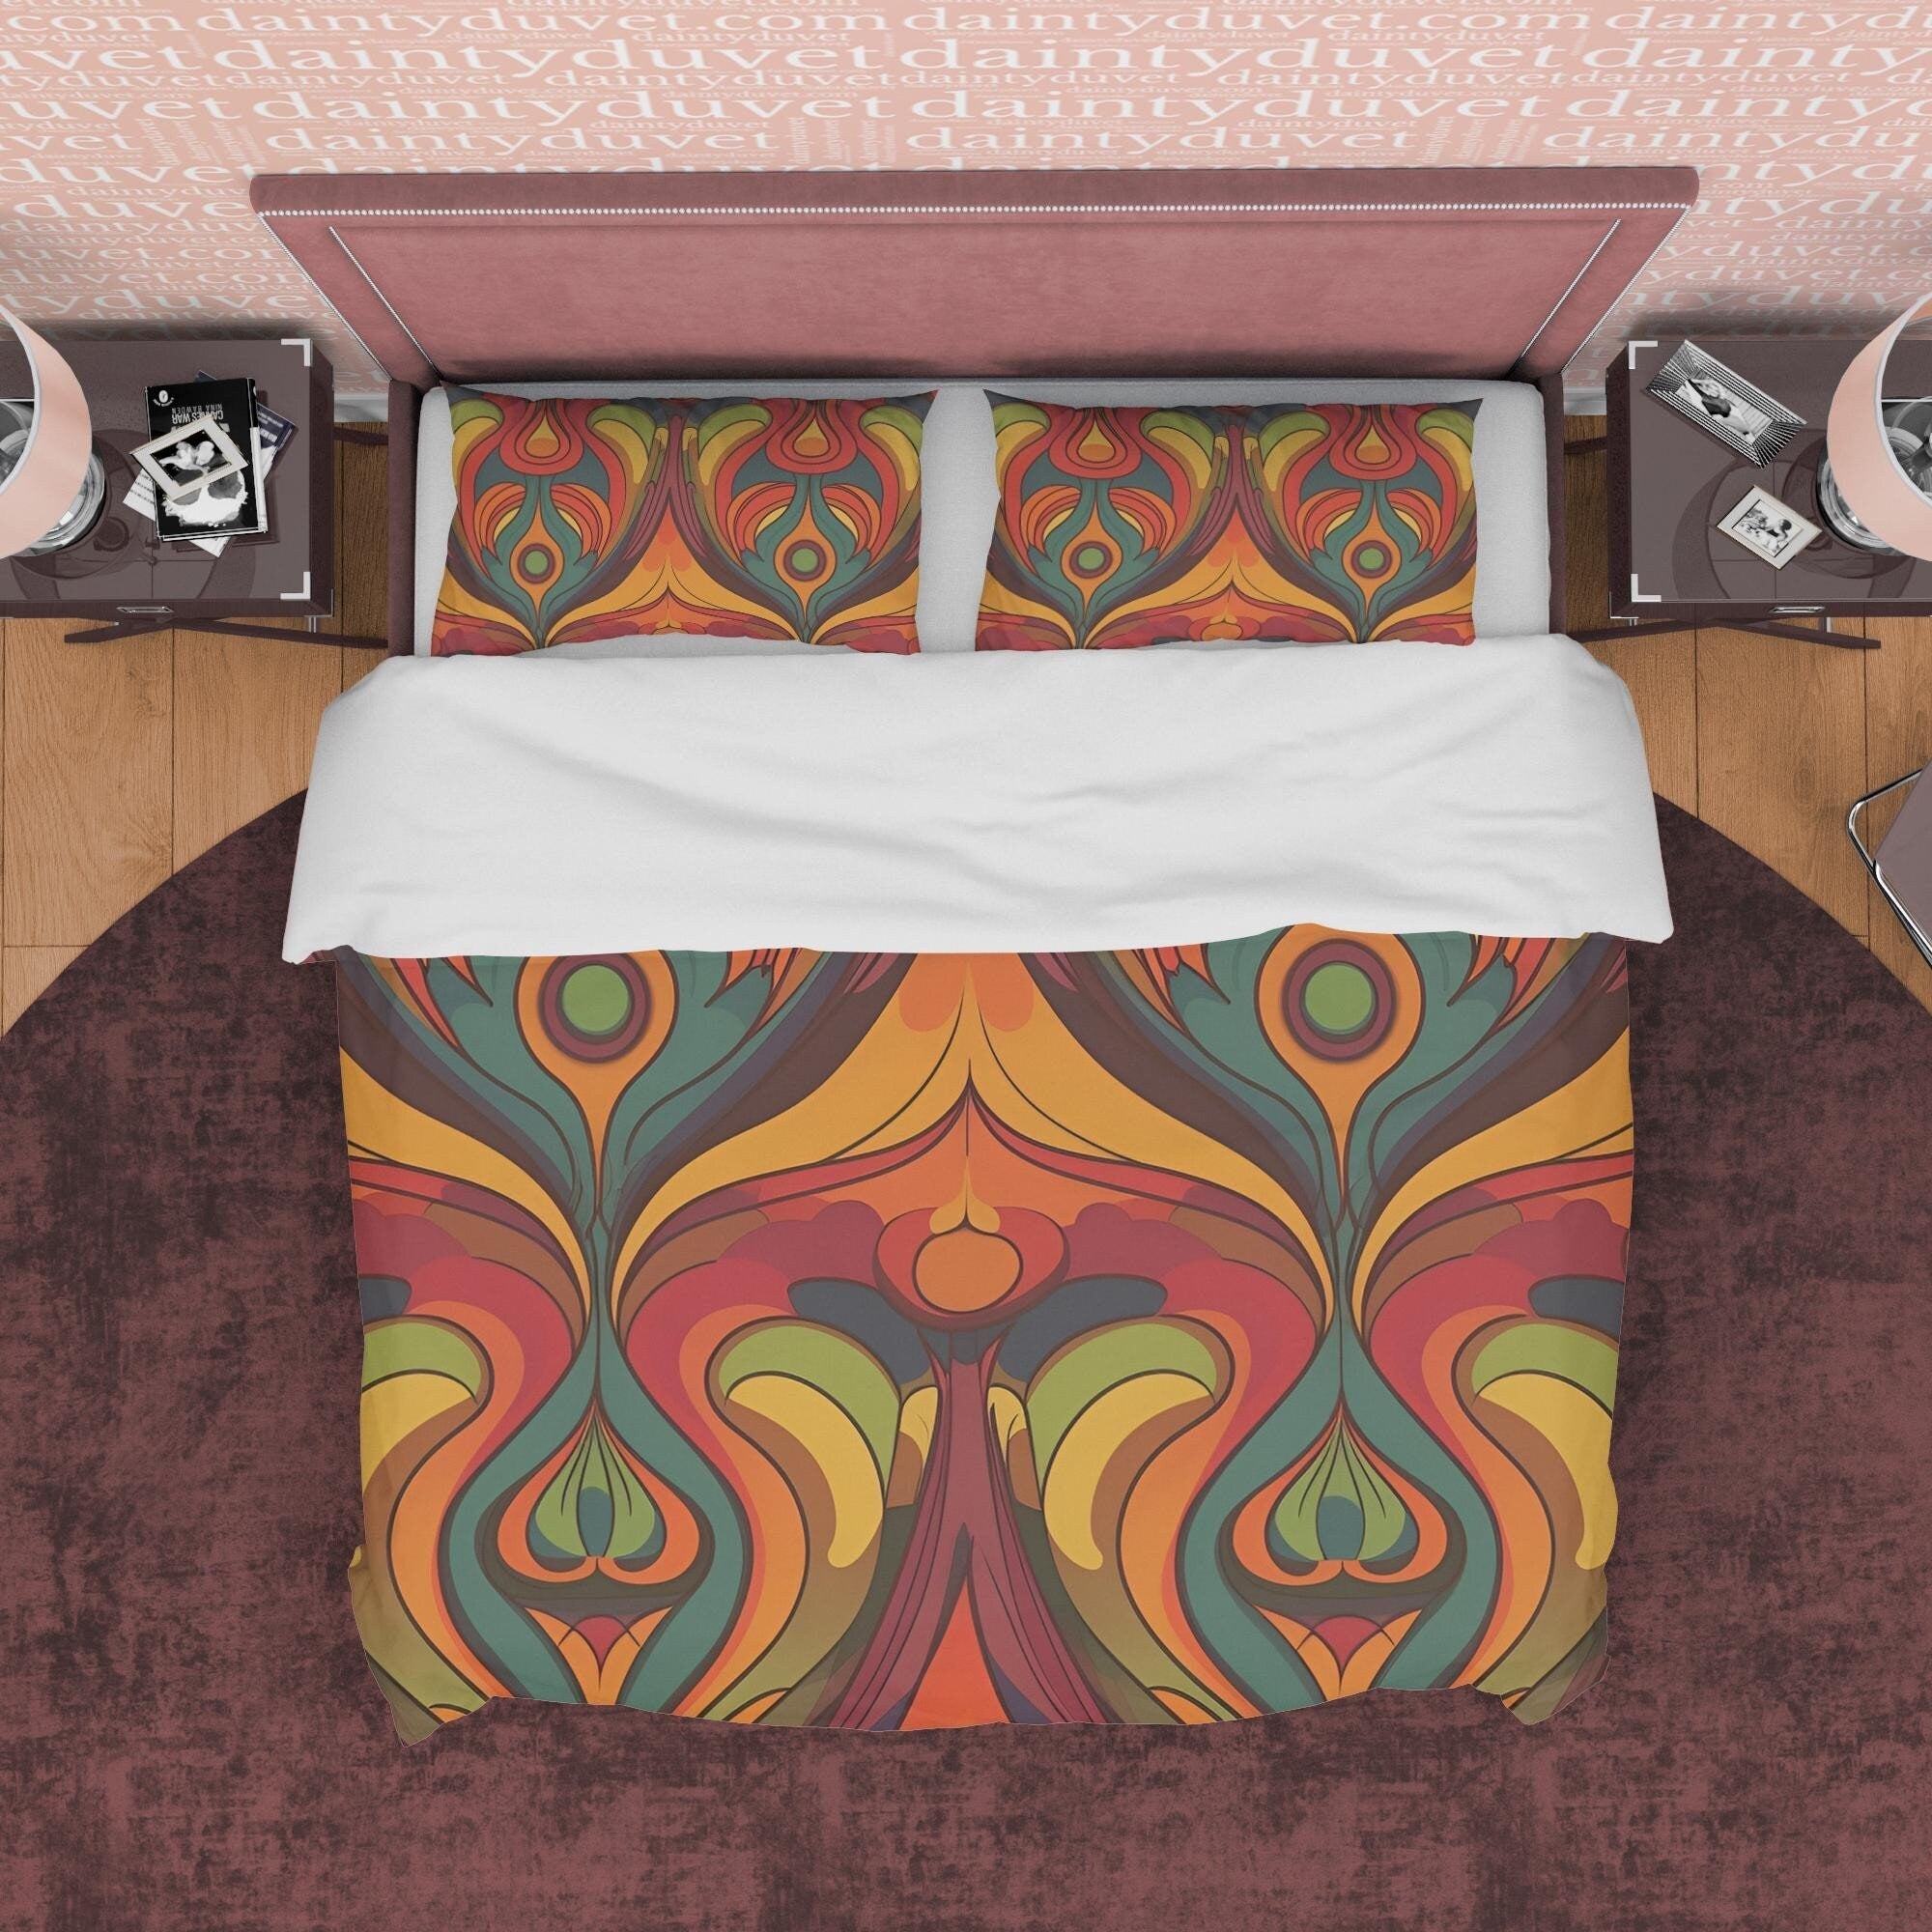 European Geometric Retro Bedding Set, Vintage Pattern Duvet Cover, Rustic Quilt Cover, Unique Brown Bedding, Zipper Bedding